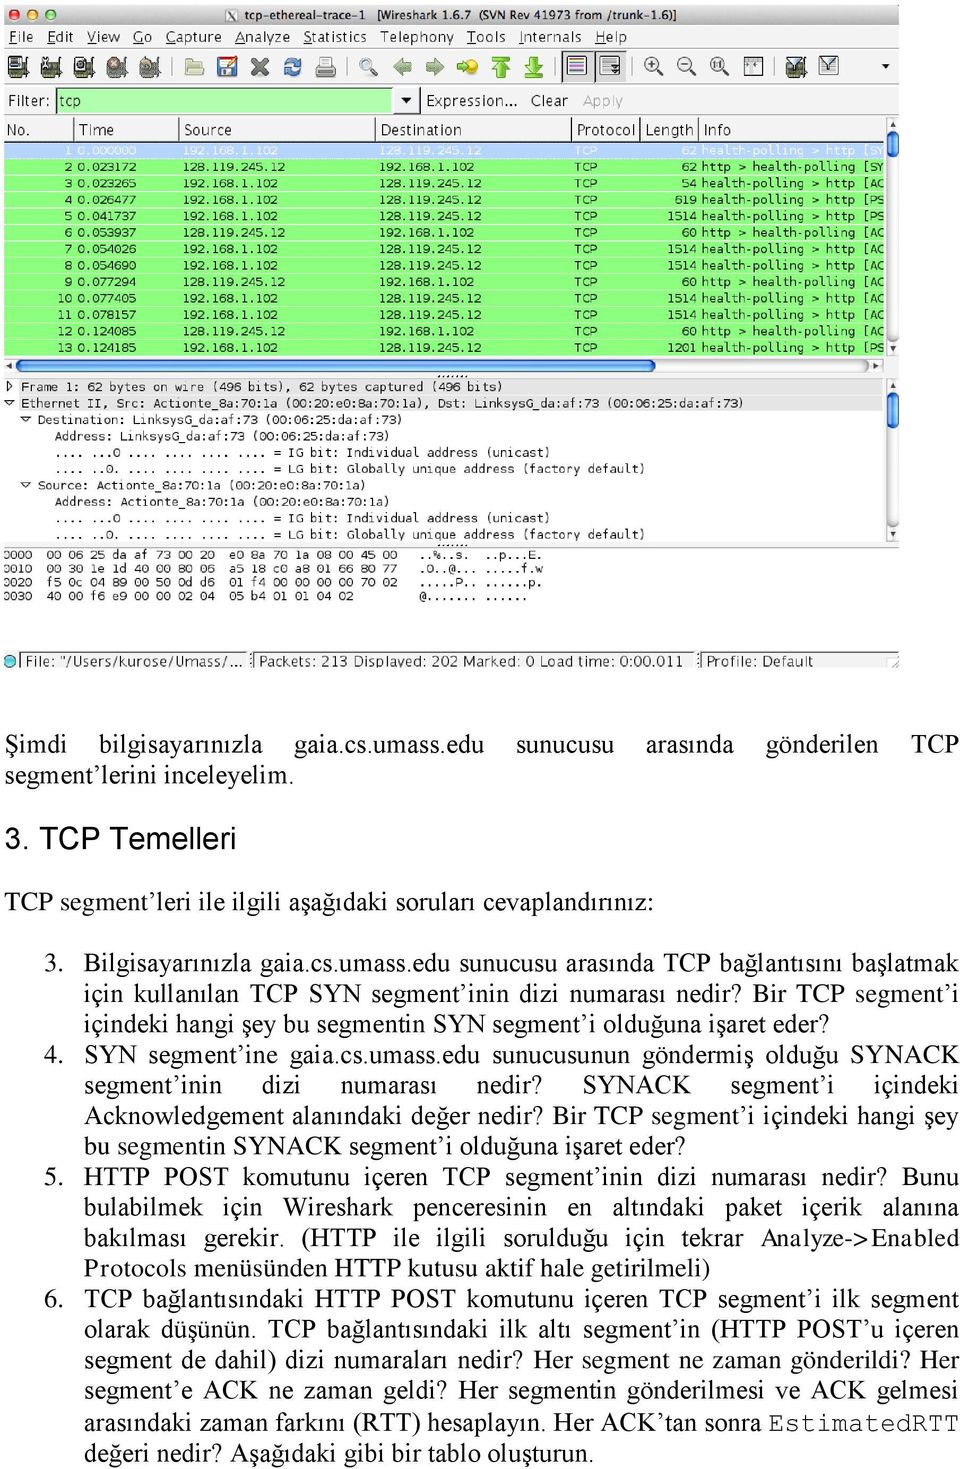 Bir TCP segment i içindeki hangi şey bu segmentin SYN segment i olduğuna işaret eder? 4. SYN segment ine gaia.cs.umass.edu sunucusunun göndermiş olduğu SYNACK segment inin dizi numarası nedir?